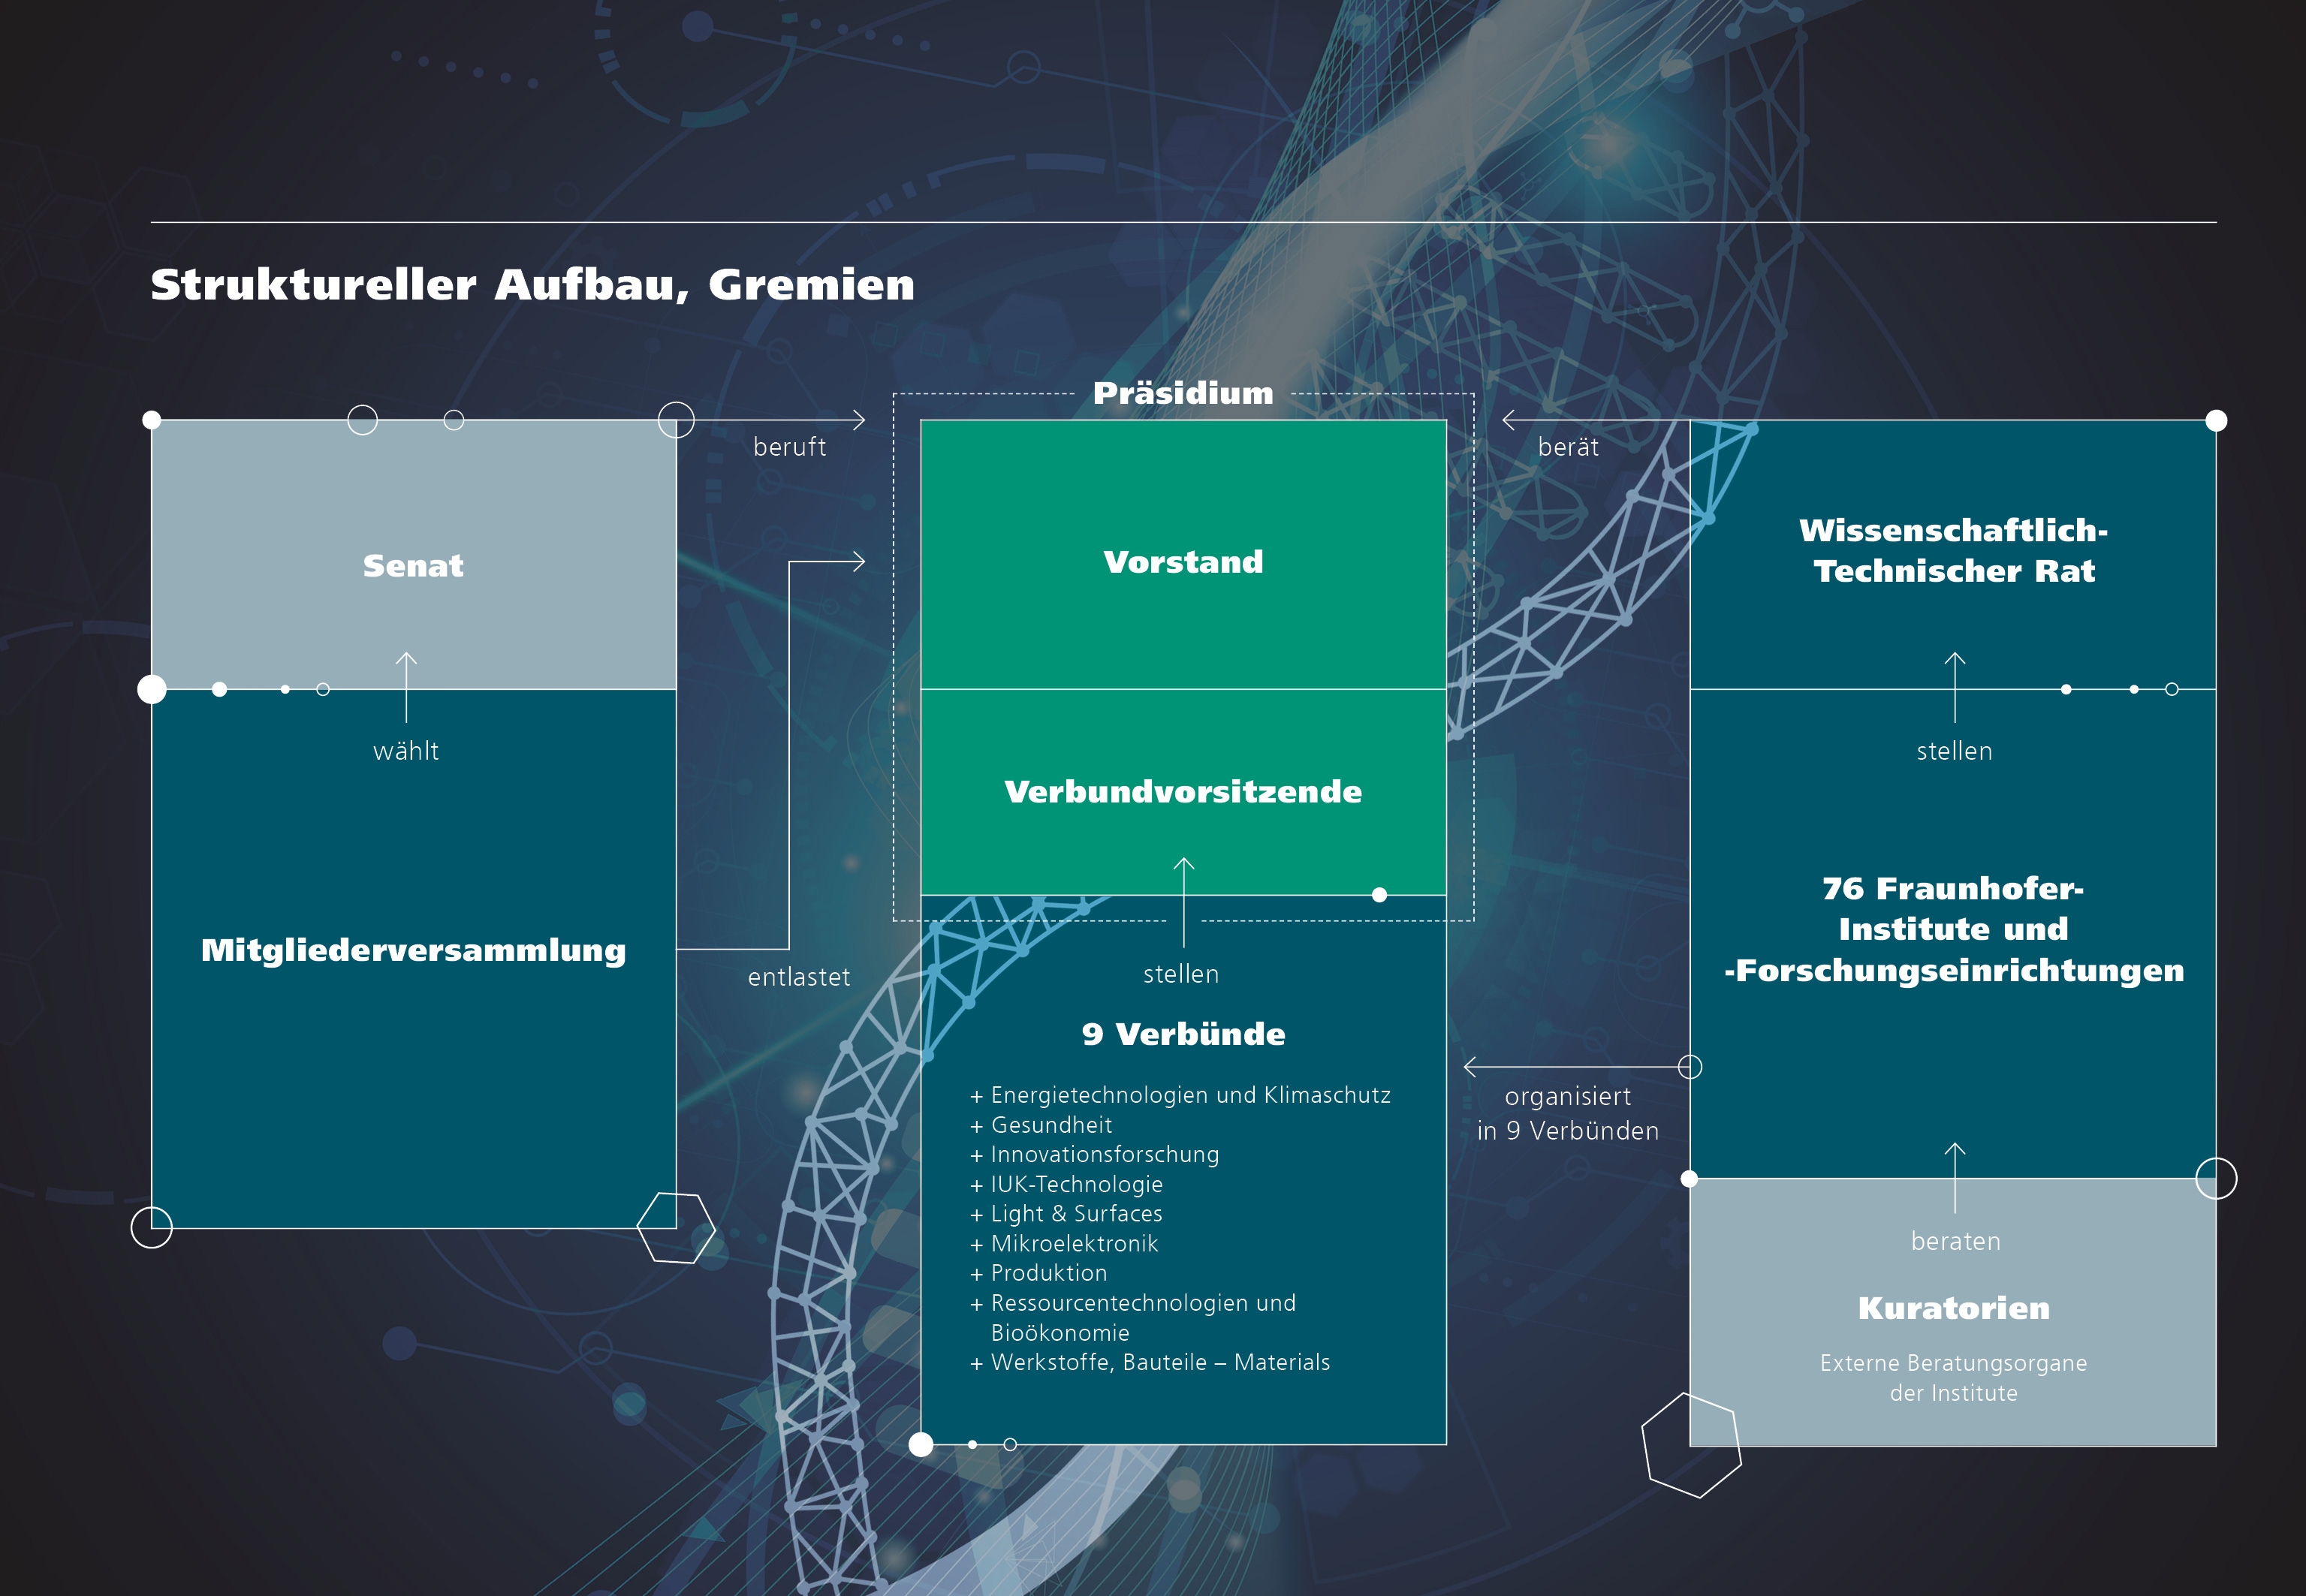 Grafik: Struktureller Aufbau und Gremien der Fraunhofer-Gesellschaft